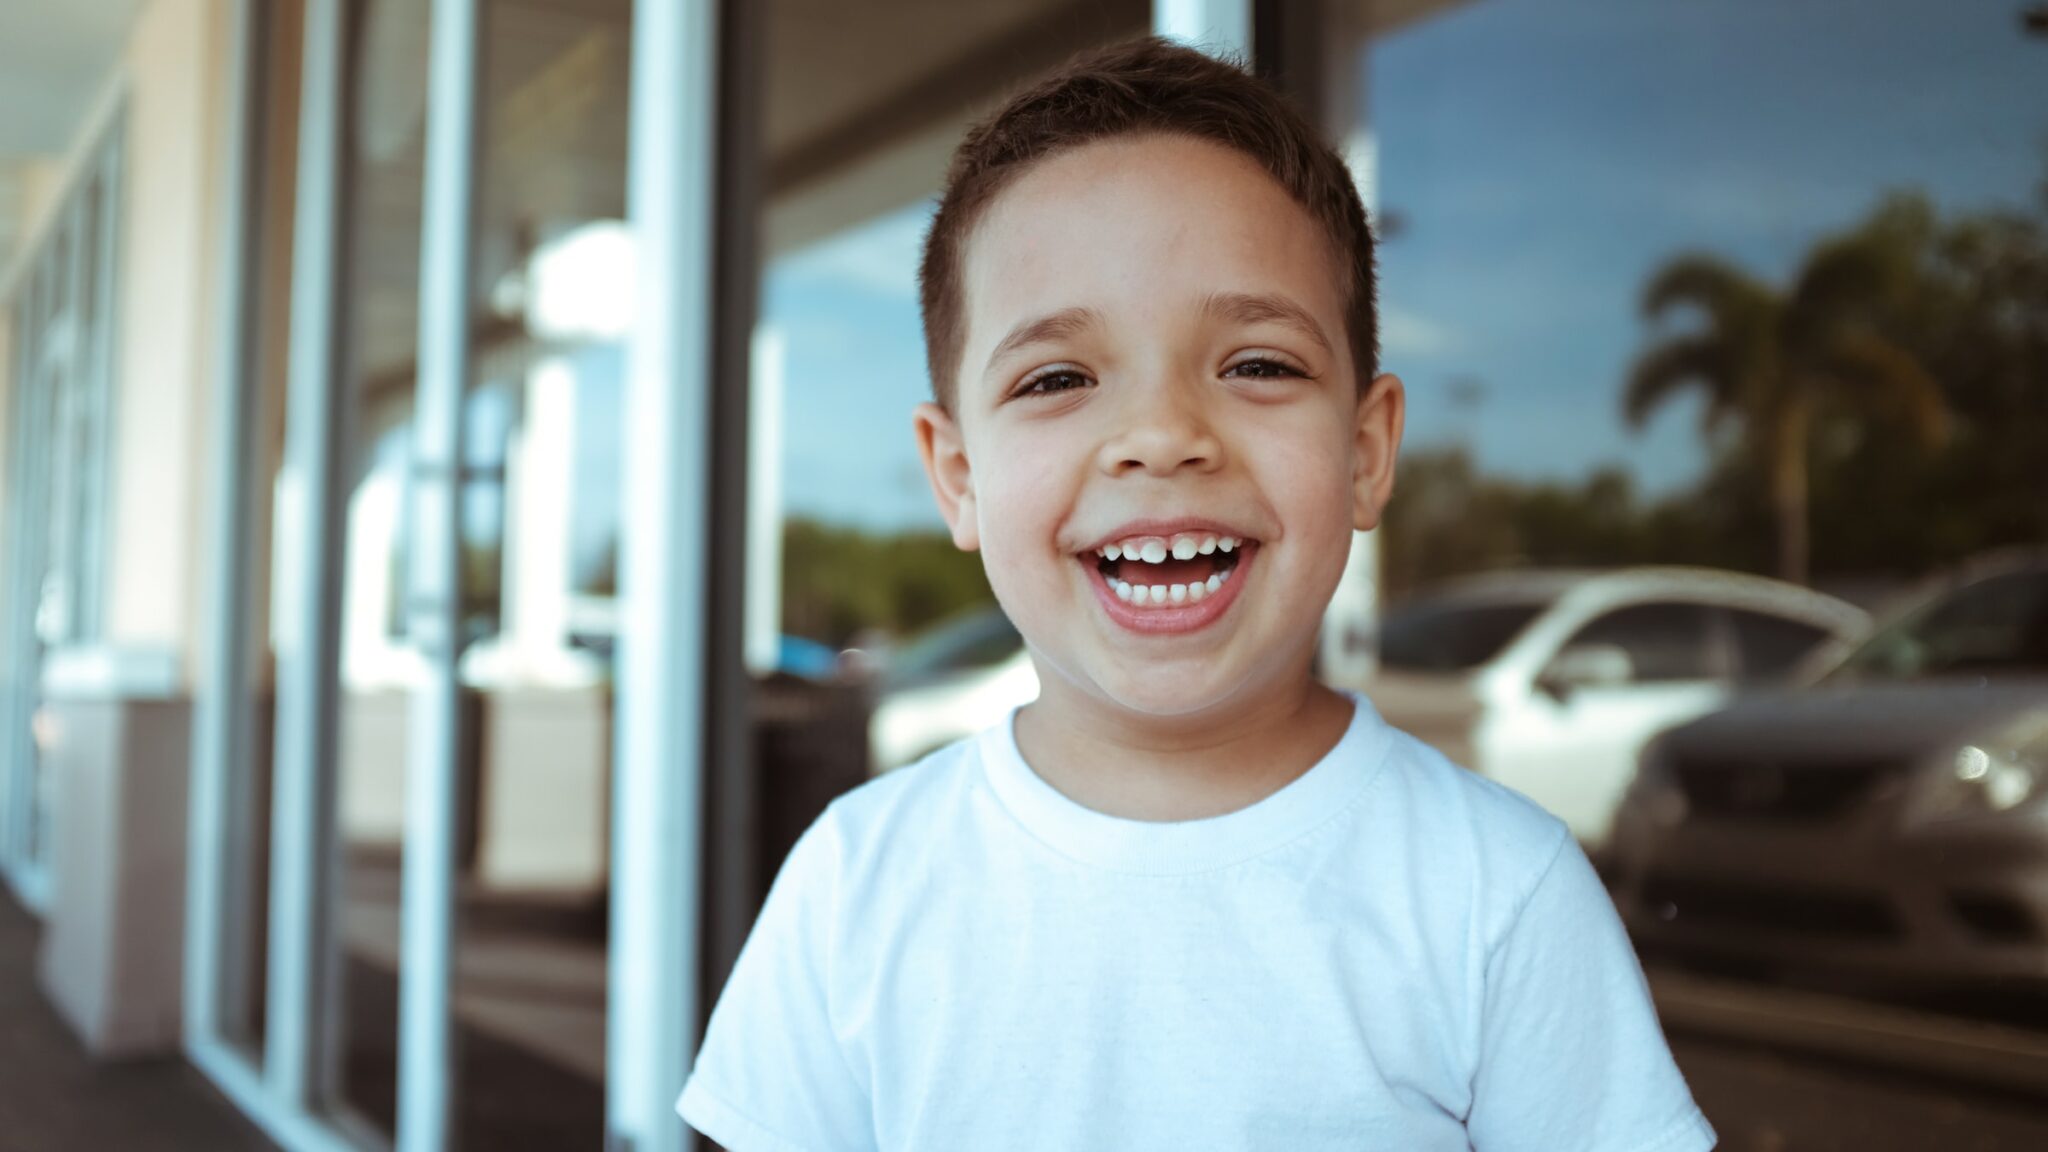 Children’s Dentist in Overland Park: 6 Ways to Help Anxious Kids Visit the Dentist